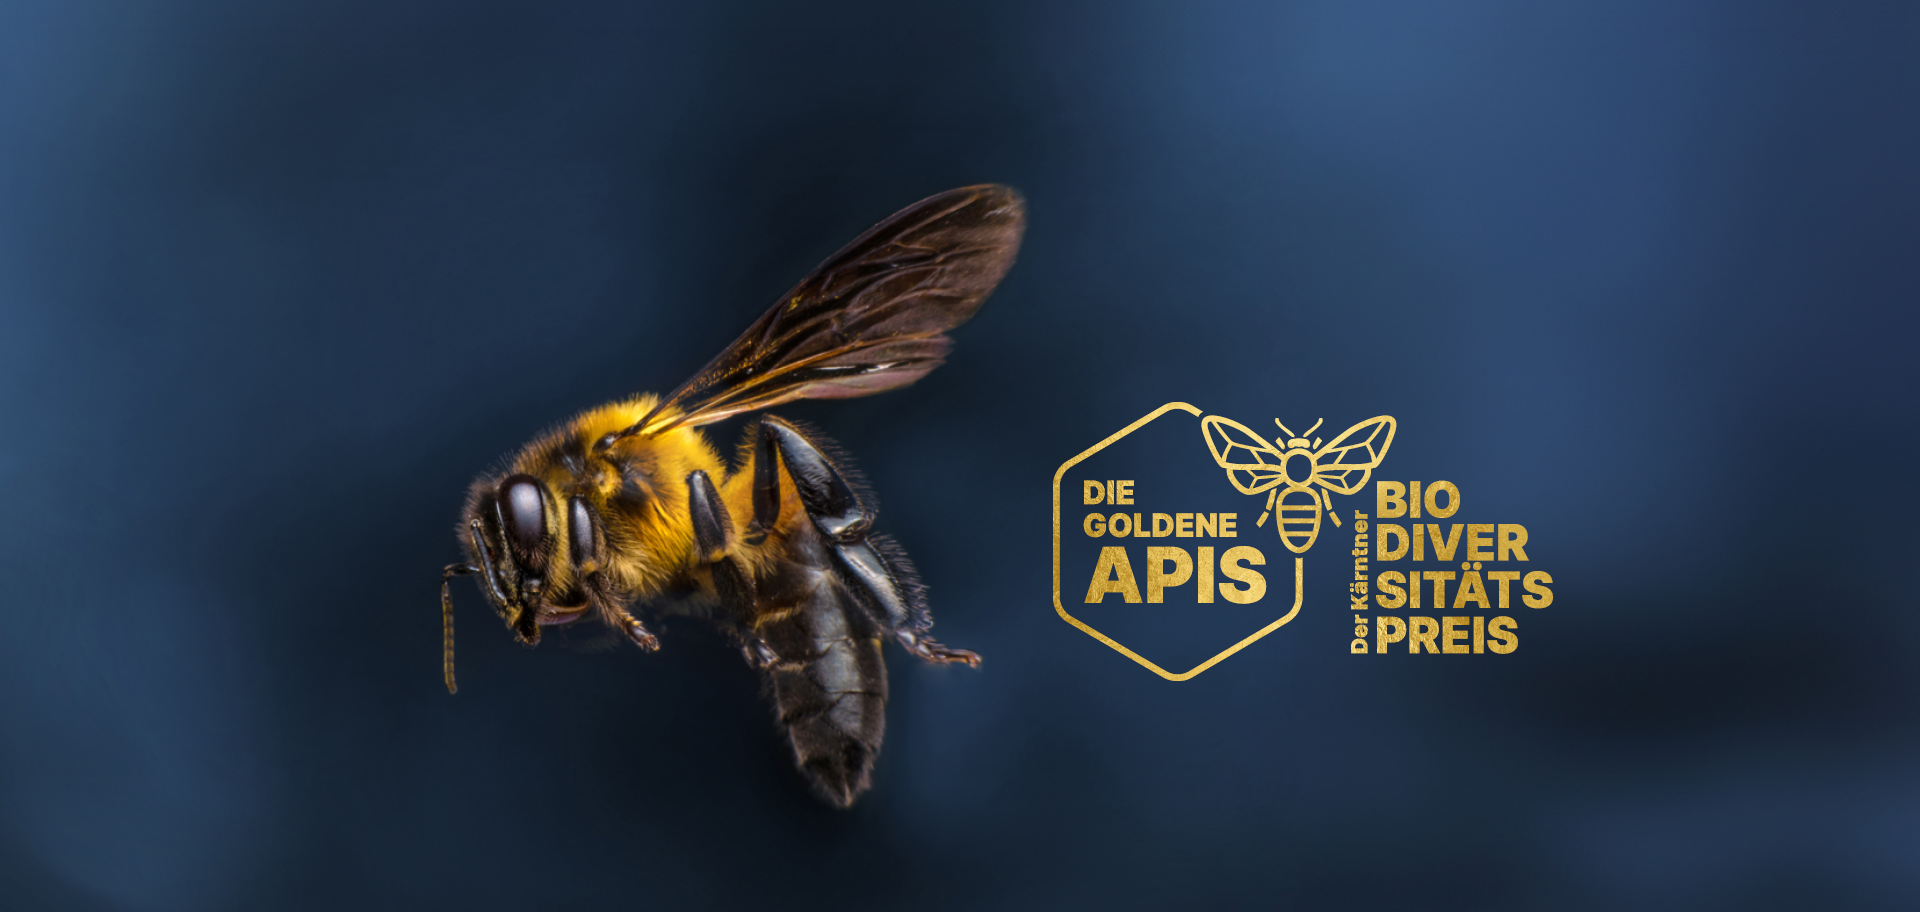 Die goldene Apis: Der erste Kärntner Biodiversitätspreis